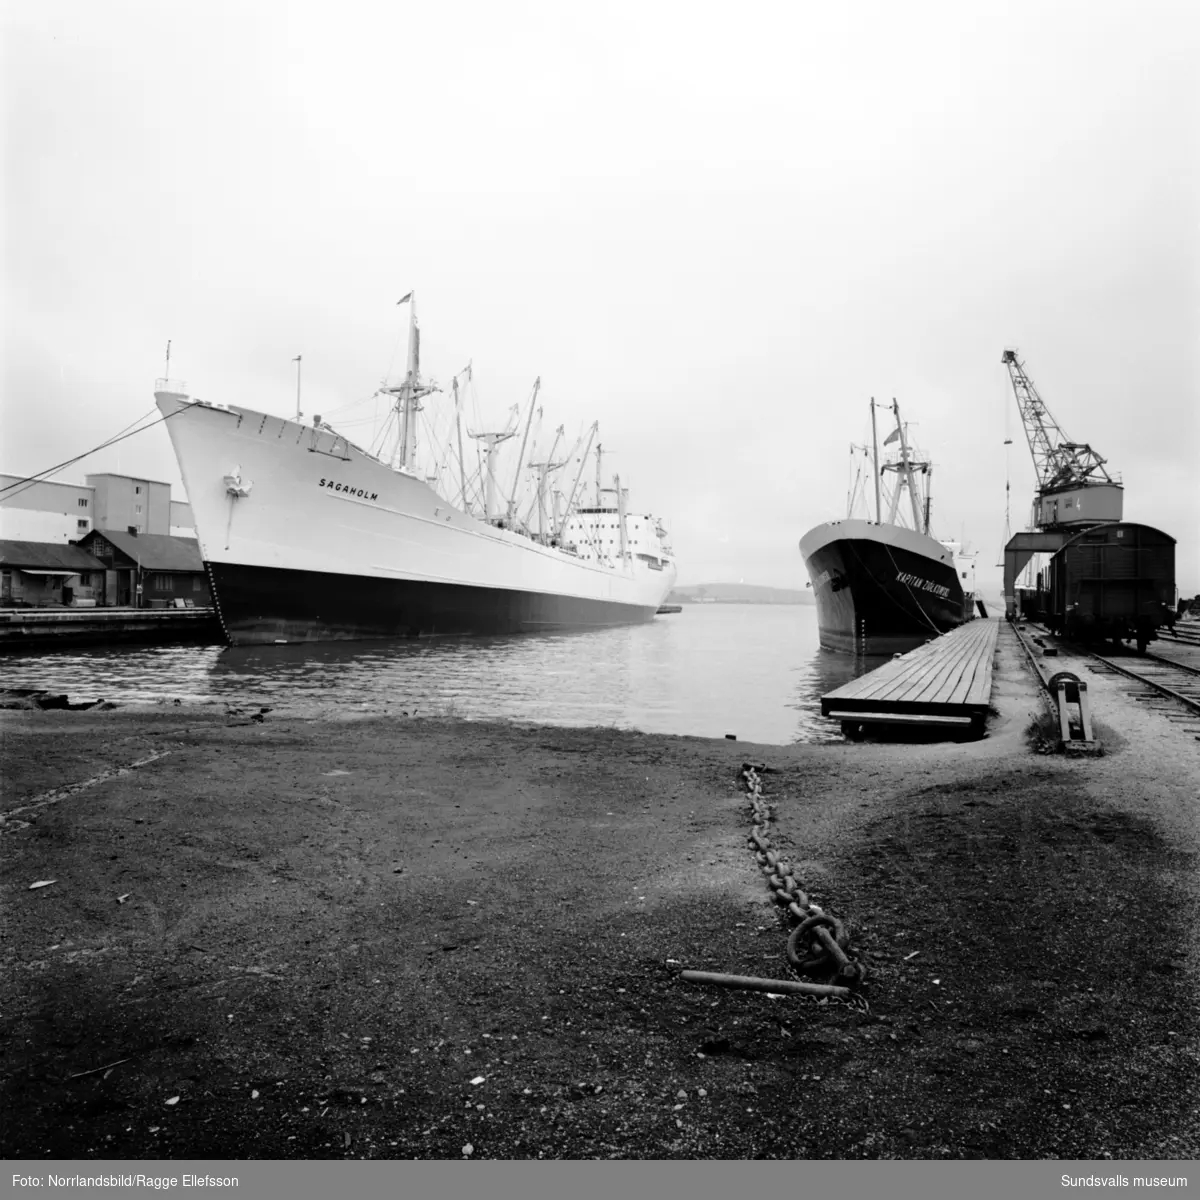 Fartygen Sagaholm och Kapitan Ziolkowski ligger vid kaj i Sundsvalls hamn.